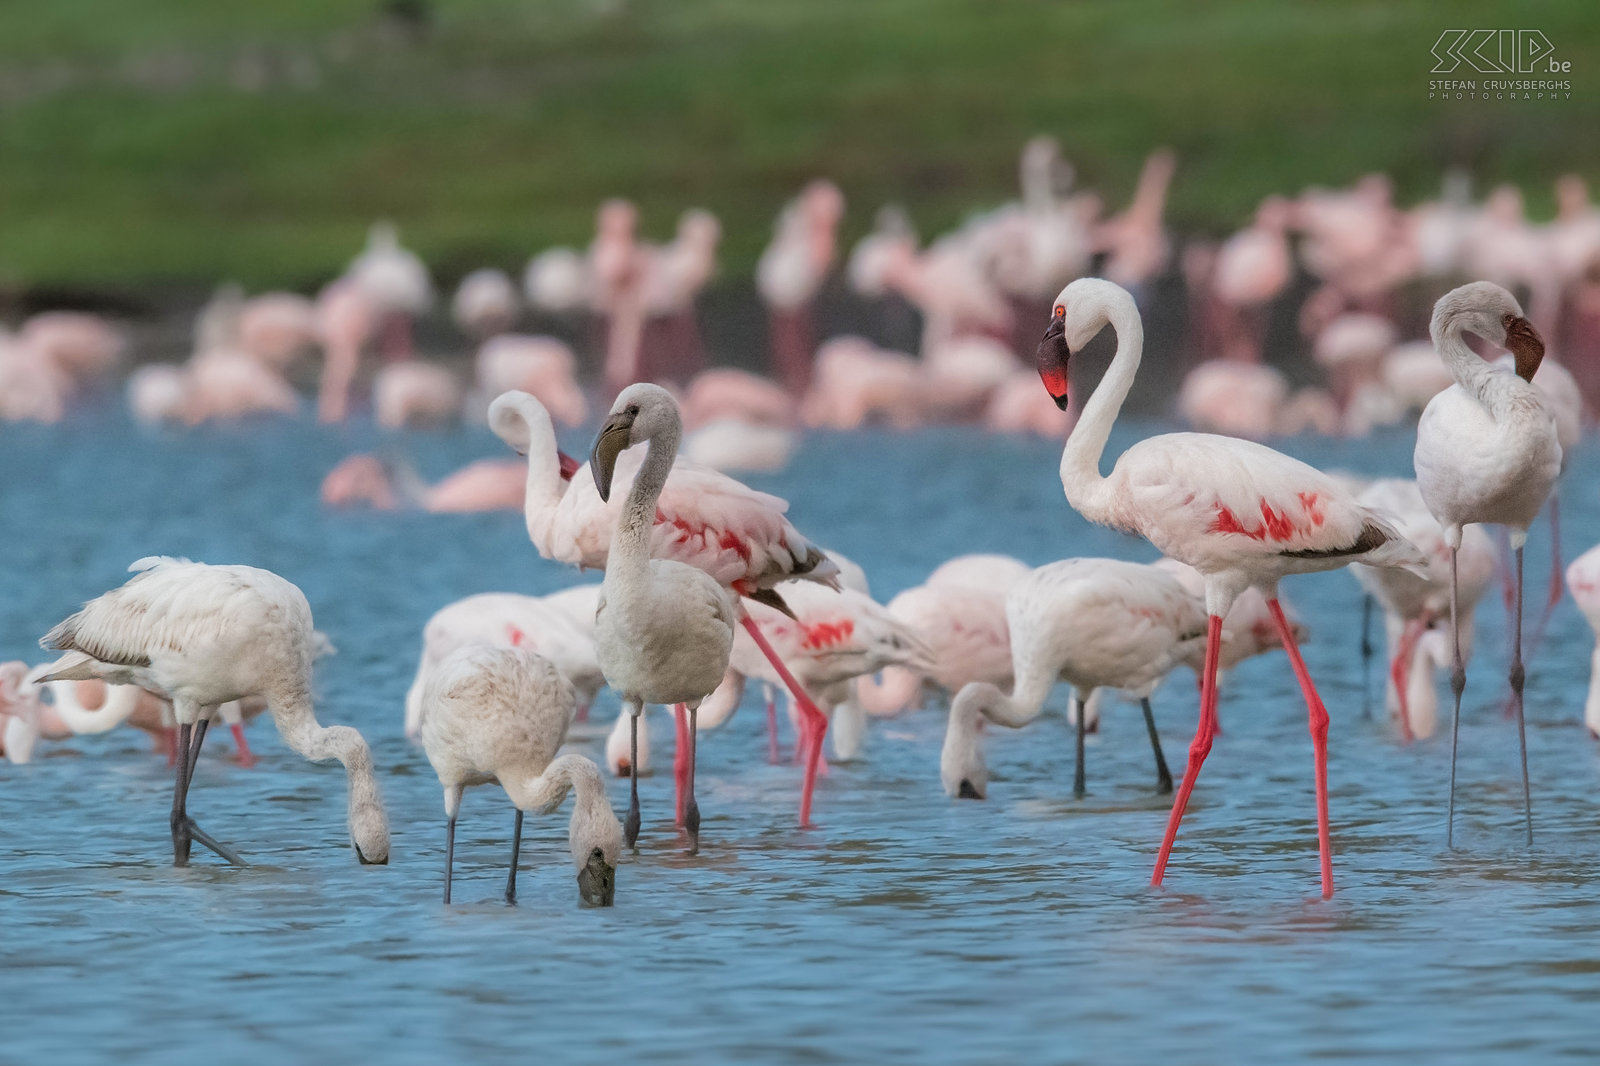 Lake Chitu - Flamingo's De gewone flamingo (Greater flamingo, Phoenicopterus roseus) is de grootste flamingo-soort. Het merendeel van het verenkleed is roze-wit maar de vleugeldekveren zijn rood. Jonge vogels hebben een grijze kleur.  Stefan Cruysberghs